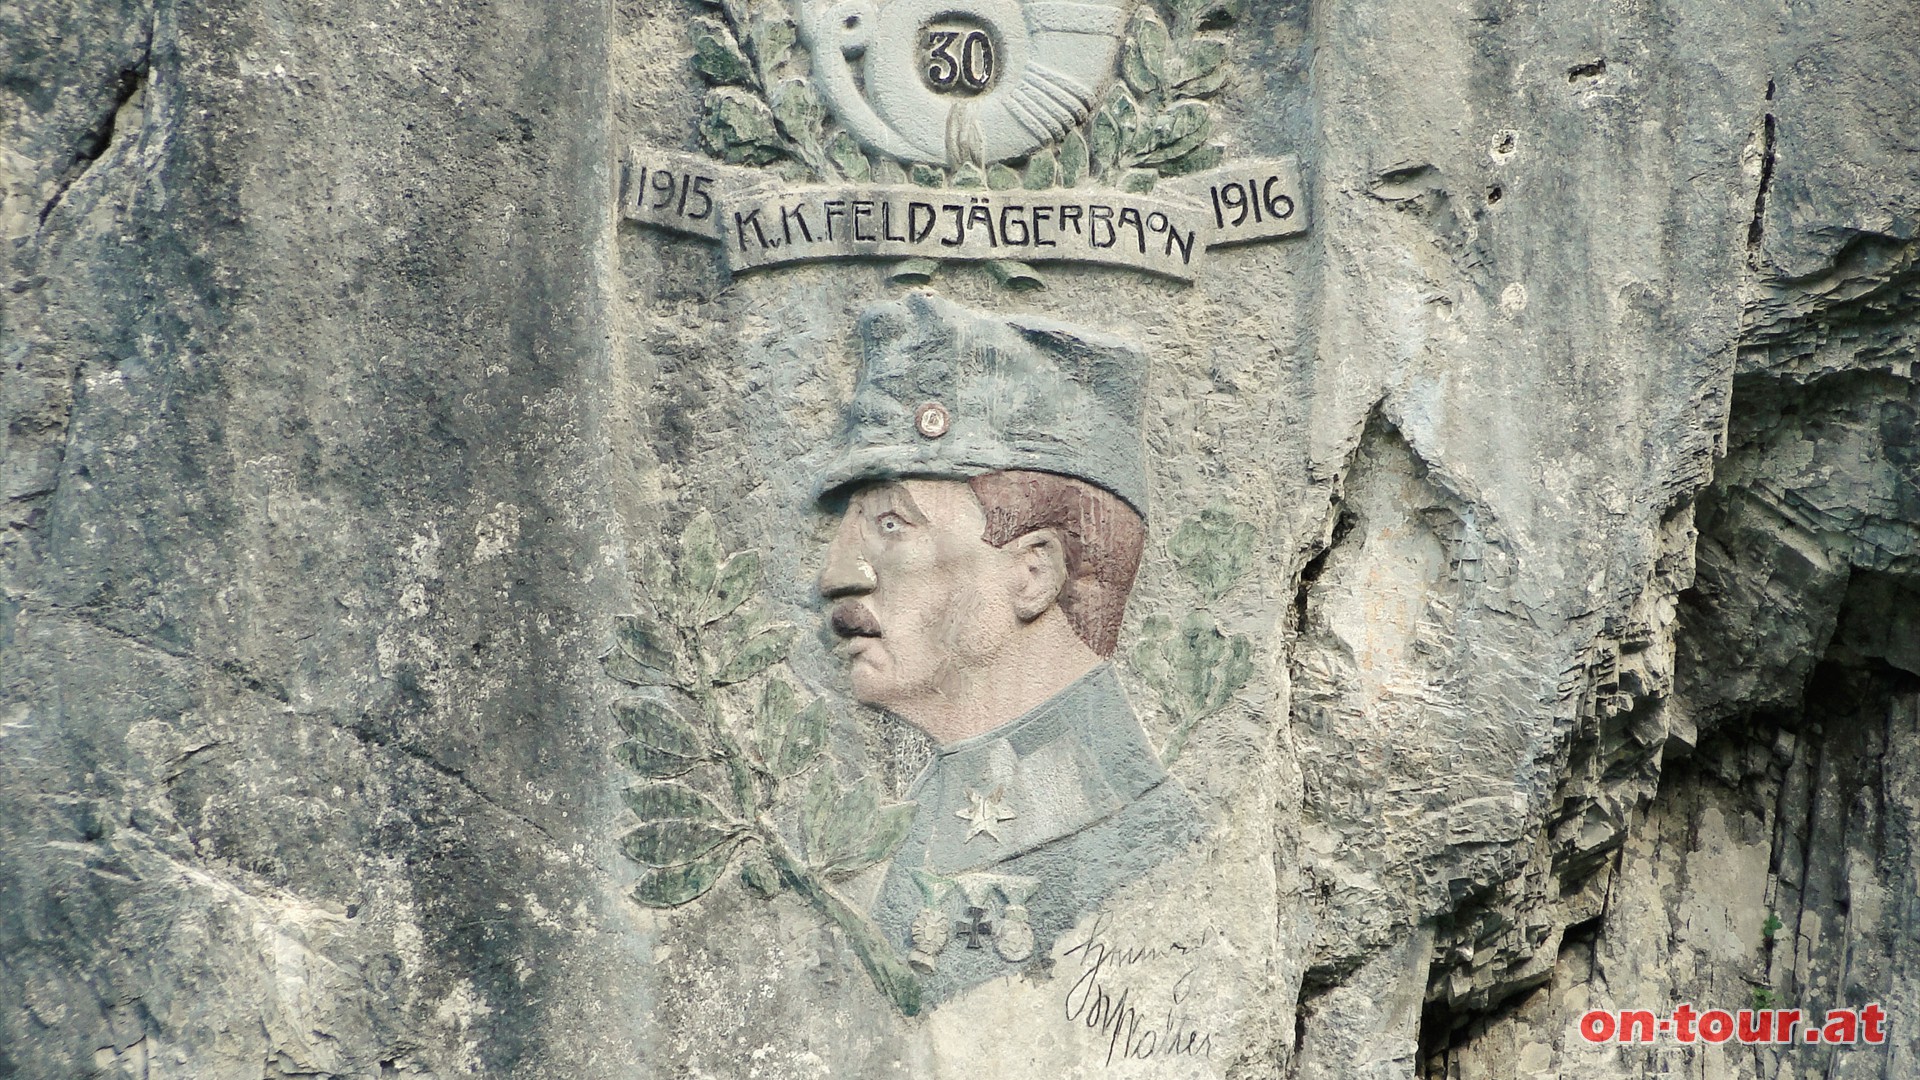 Hier hat sich das 30. KuK. FeldjgerBaon in den Kriegsjahren 1915 und 1916 verewigt.